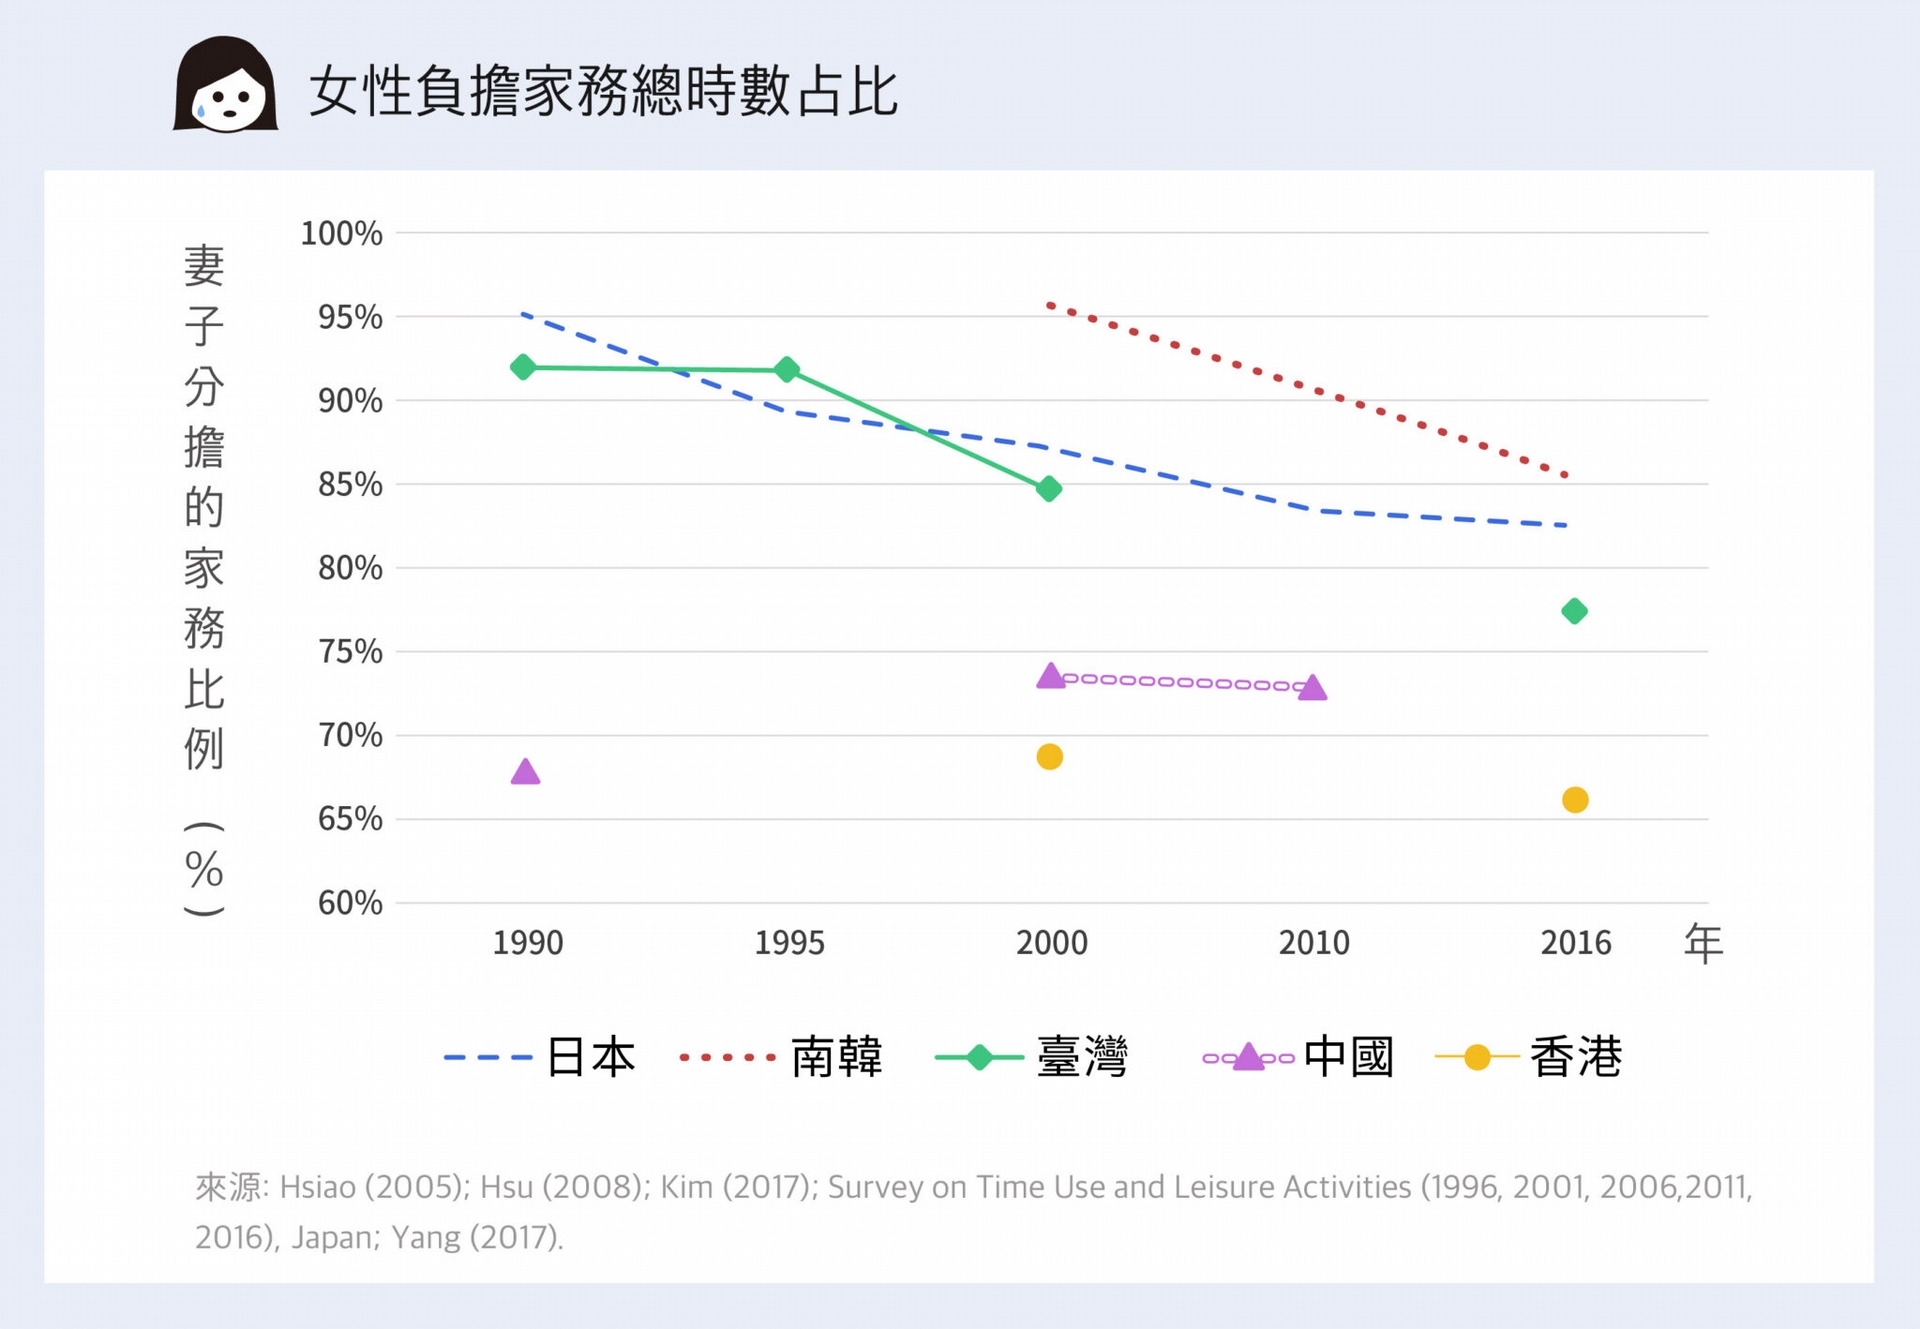 東亞各國相比，日韓女性都負擔超過八成的家務，臺灣也有近八成。香港超過六成五，中國超過七成。 資料來源│鄭雁馨 